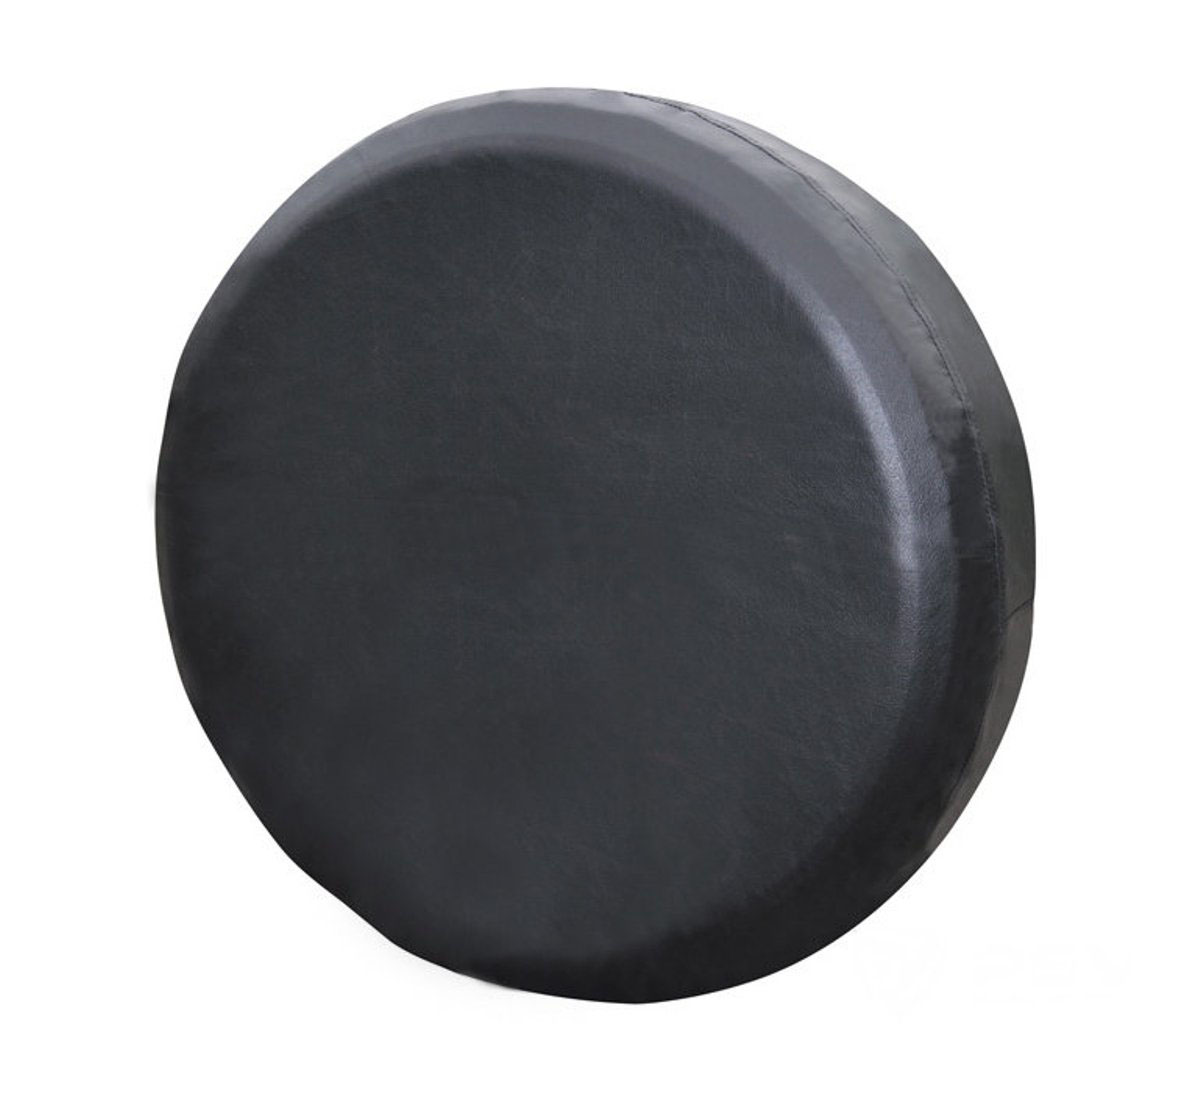 Чехол на запасное колесо "Auto Premium", цвет: черный. Размер S (64-69 см)